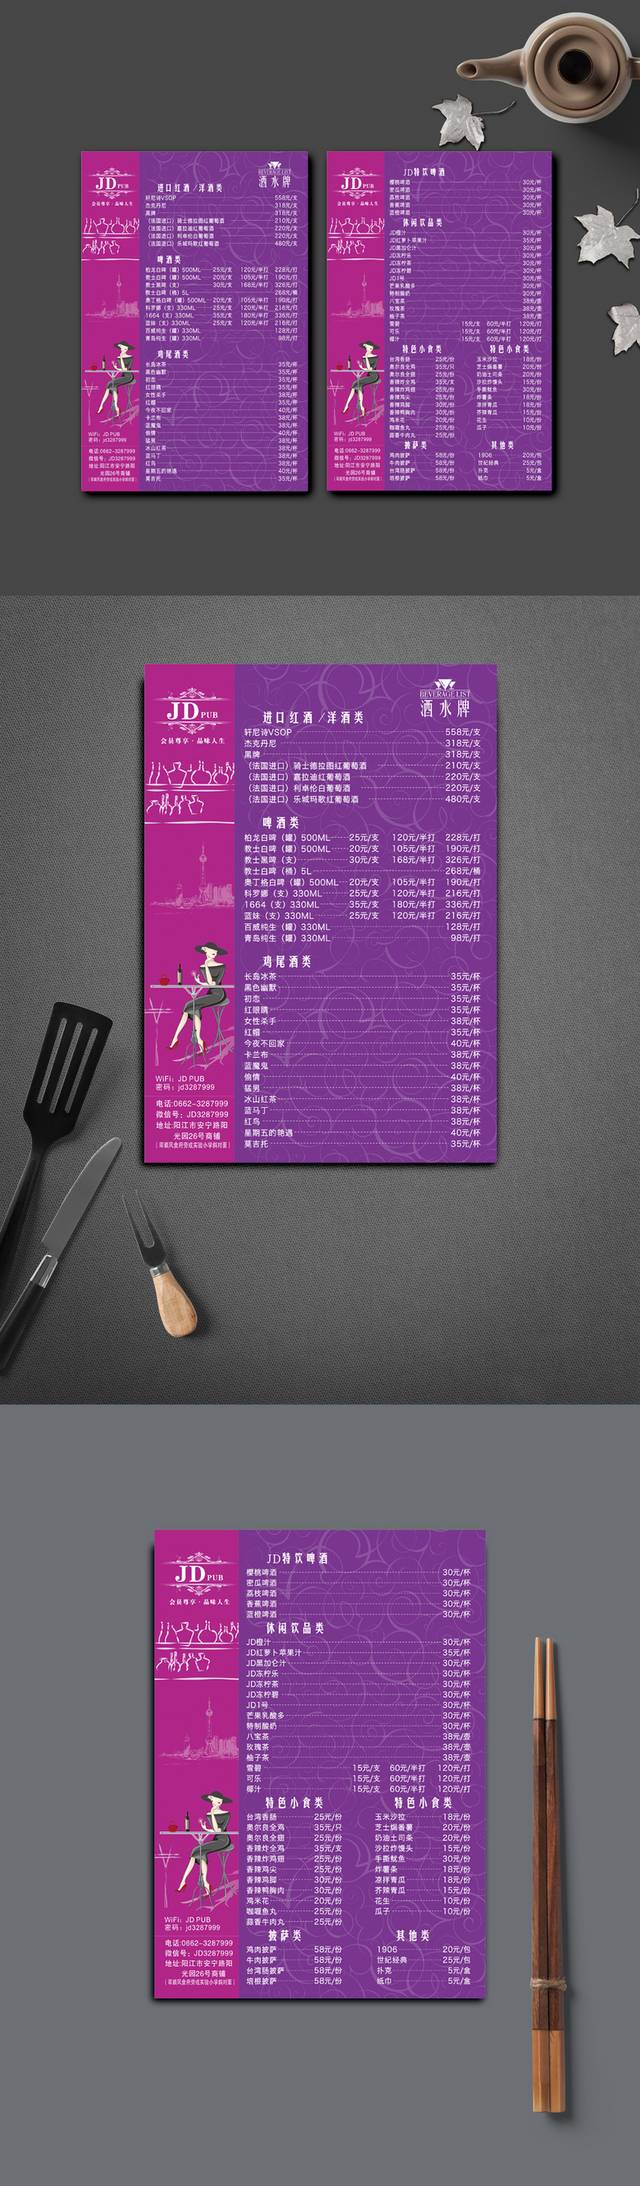 紫色洋气酒吧菜单设计